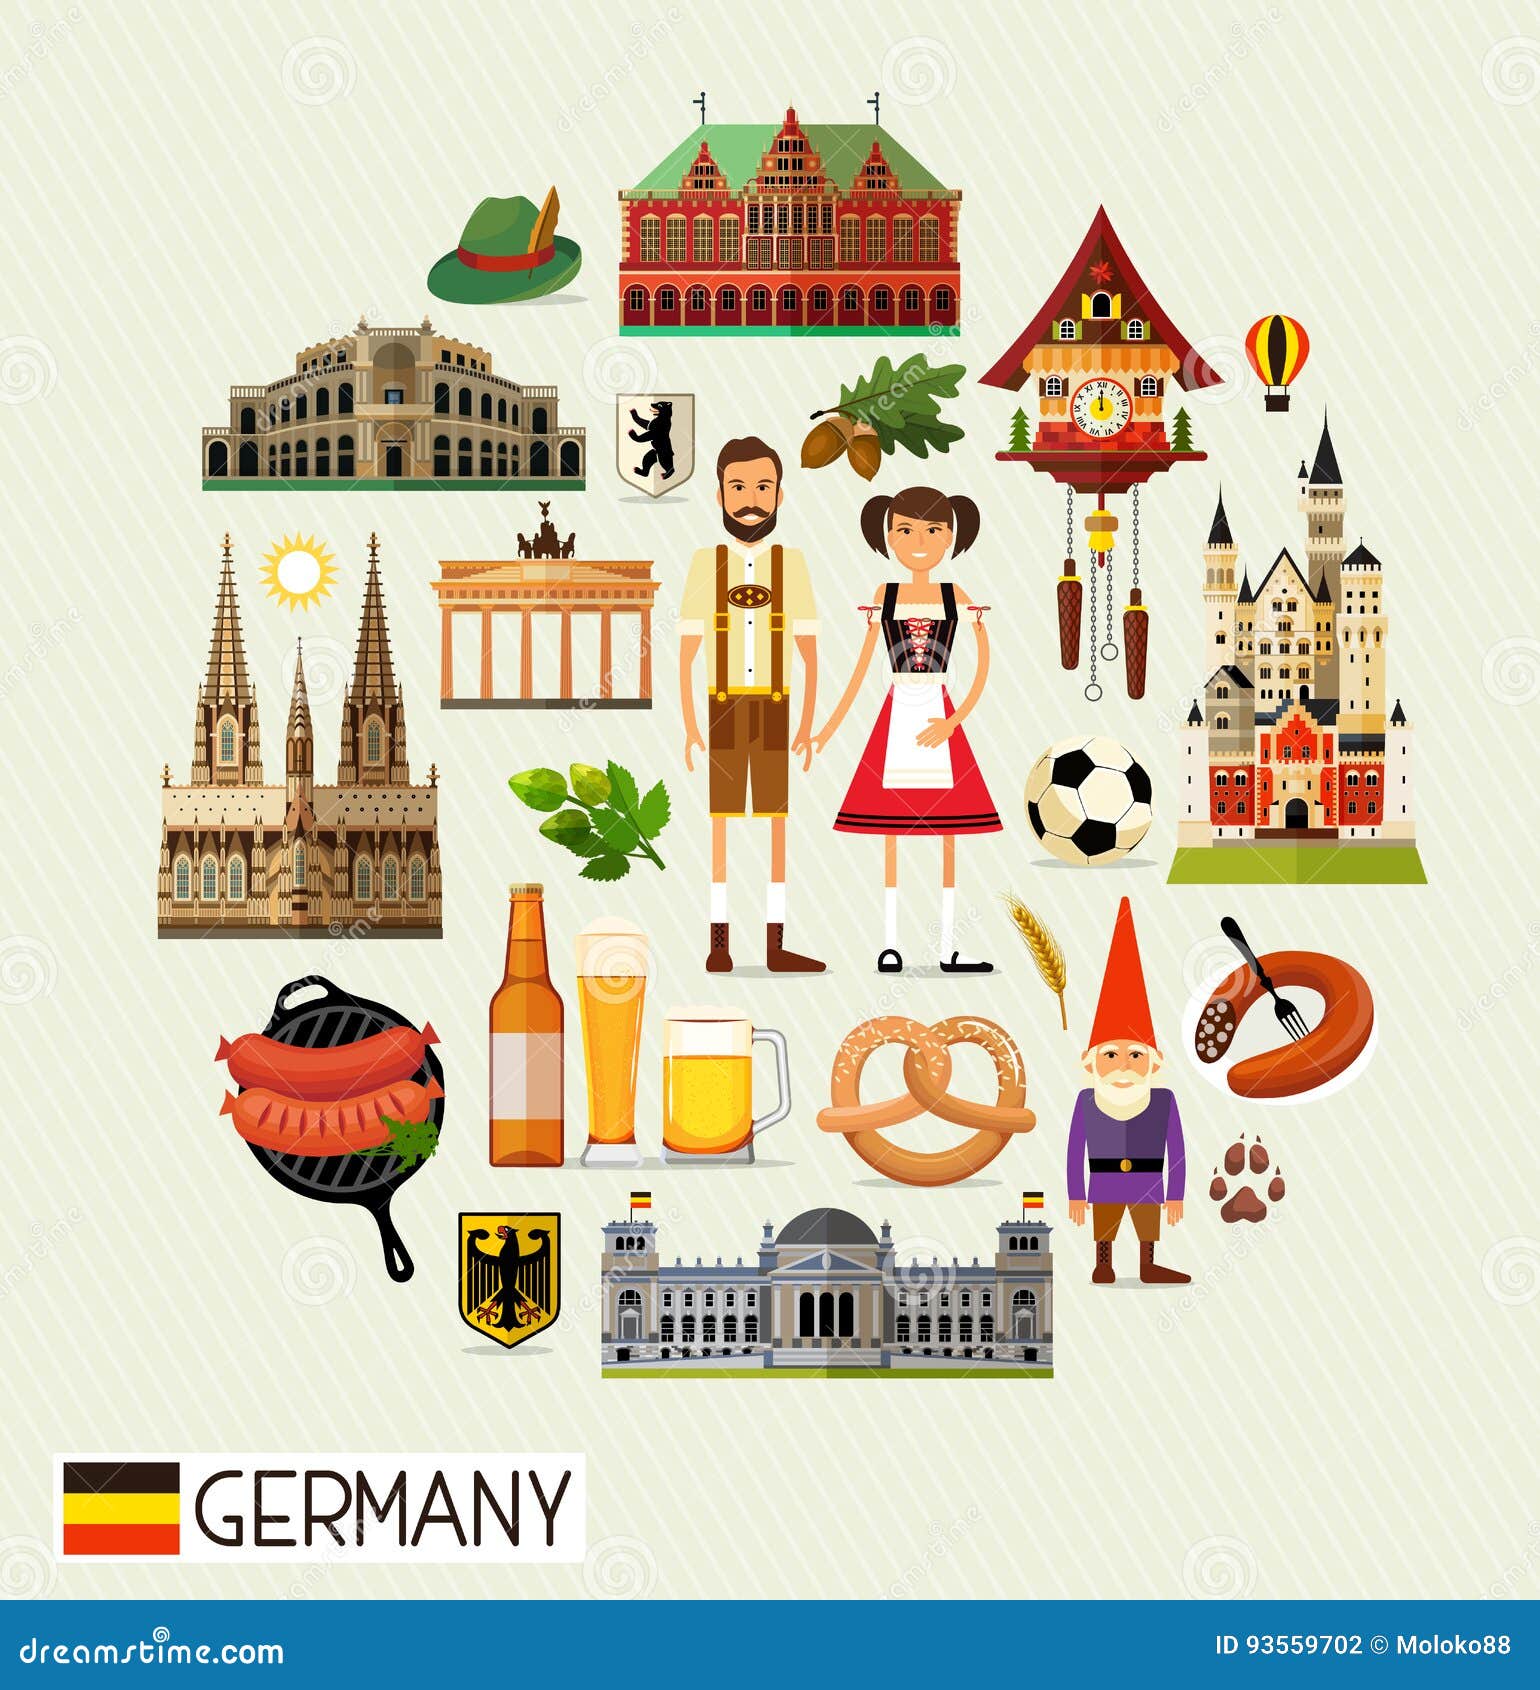 Игры на тему германия. Символы Германии для детей. Германия иллюстрации. Символы Германии в картинках. Культурные символы Германии.